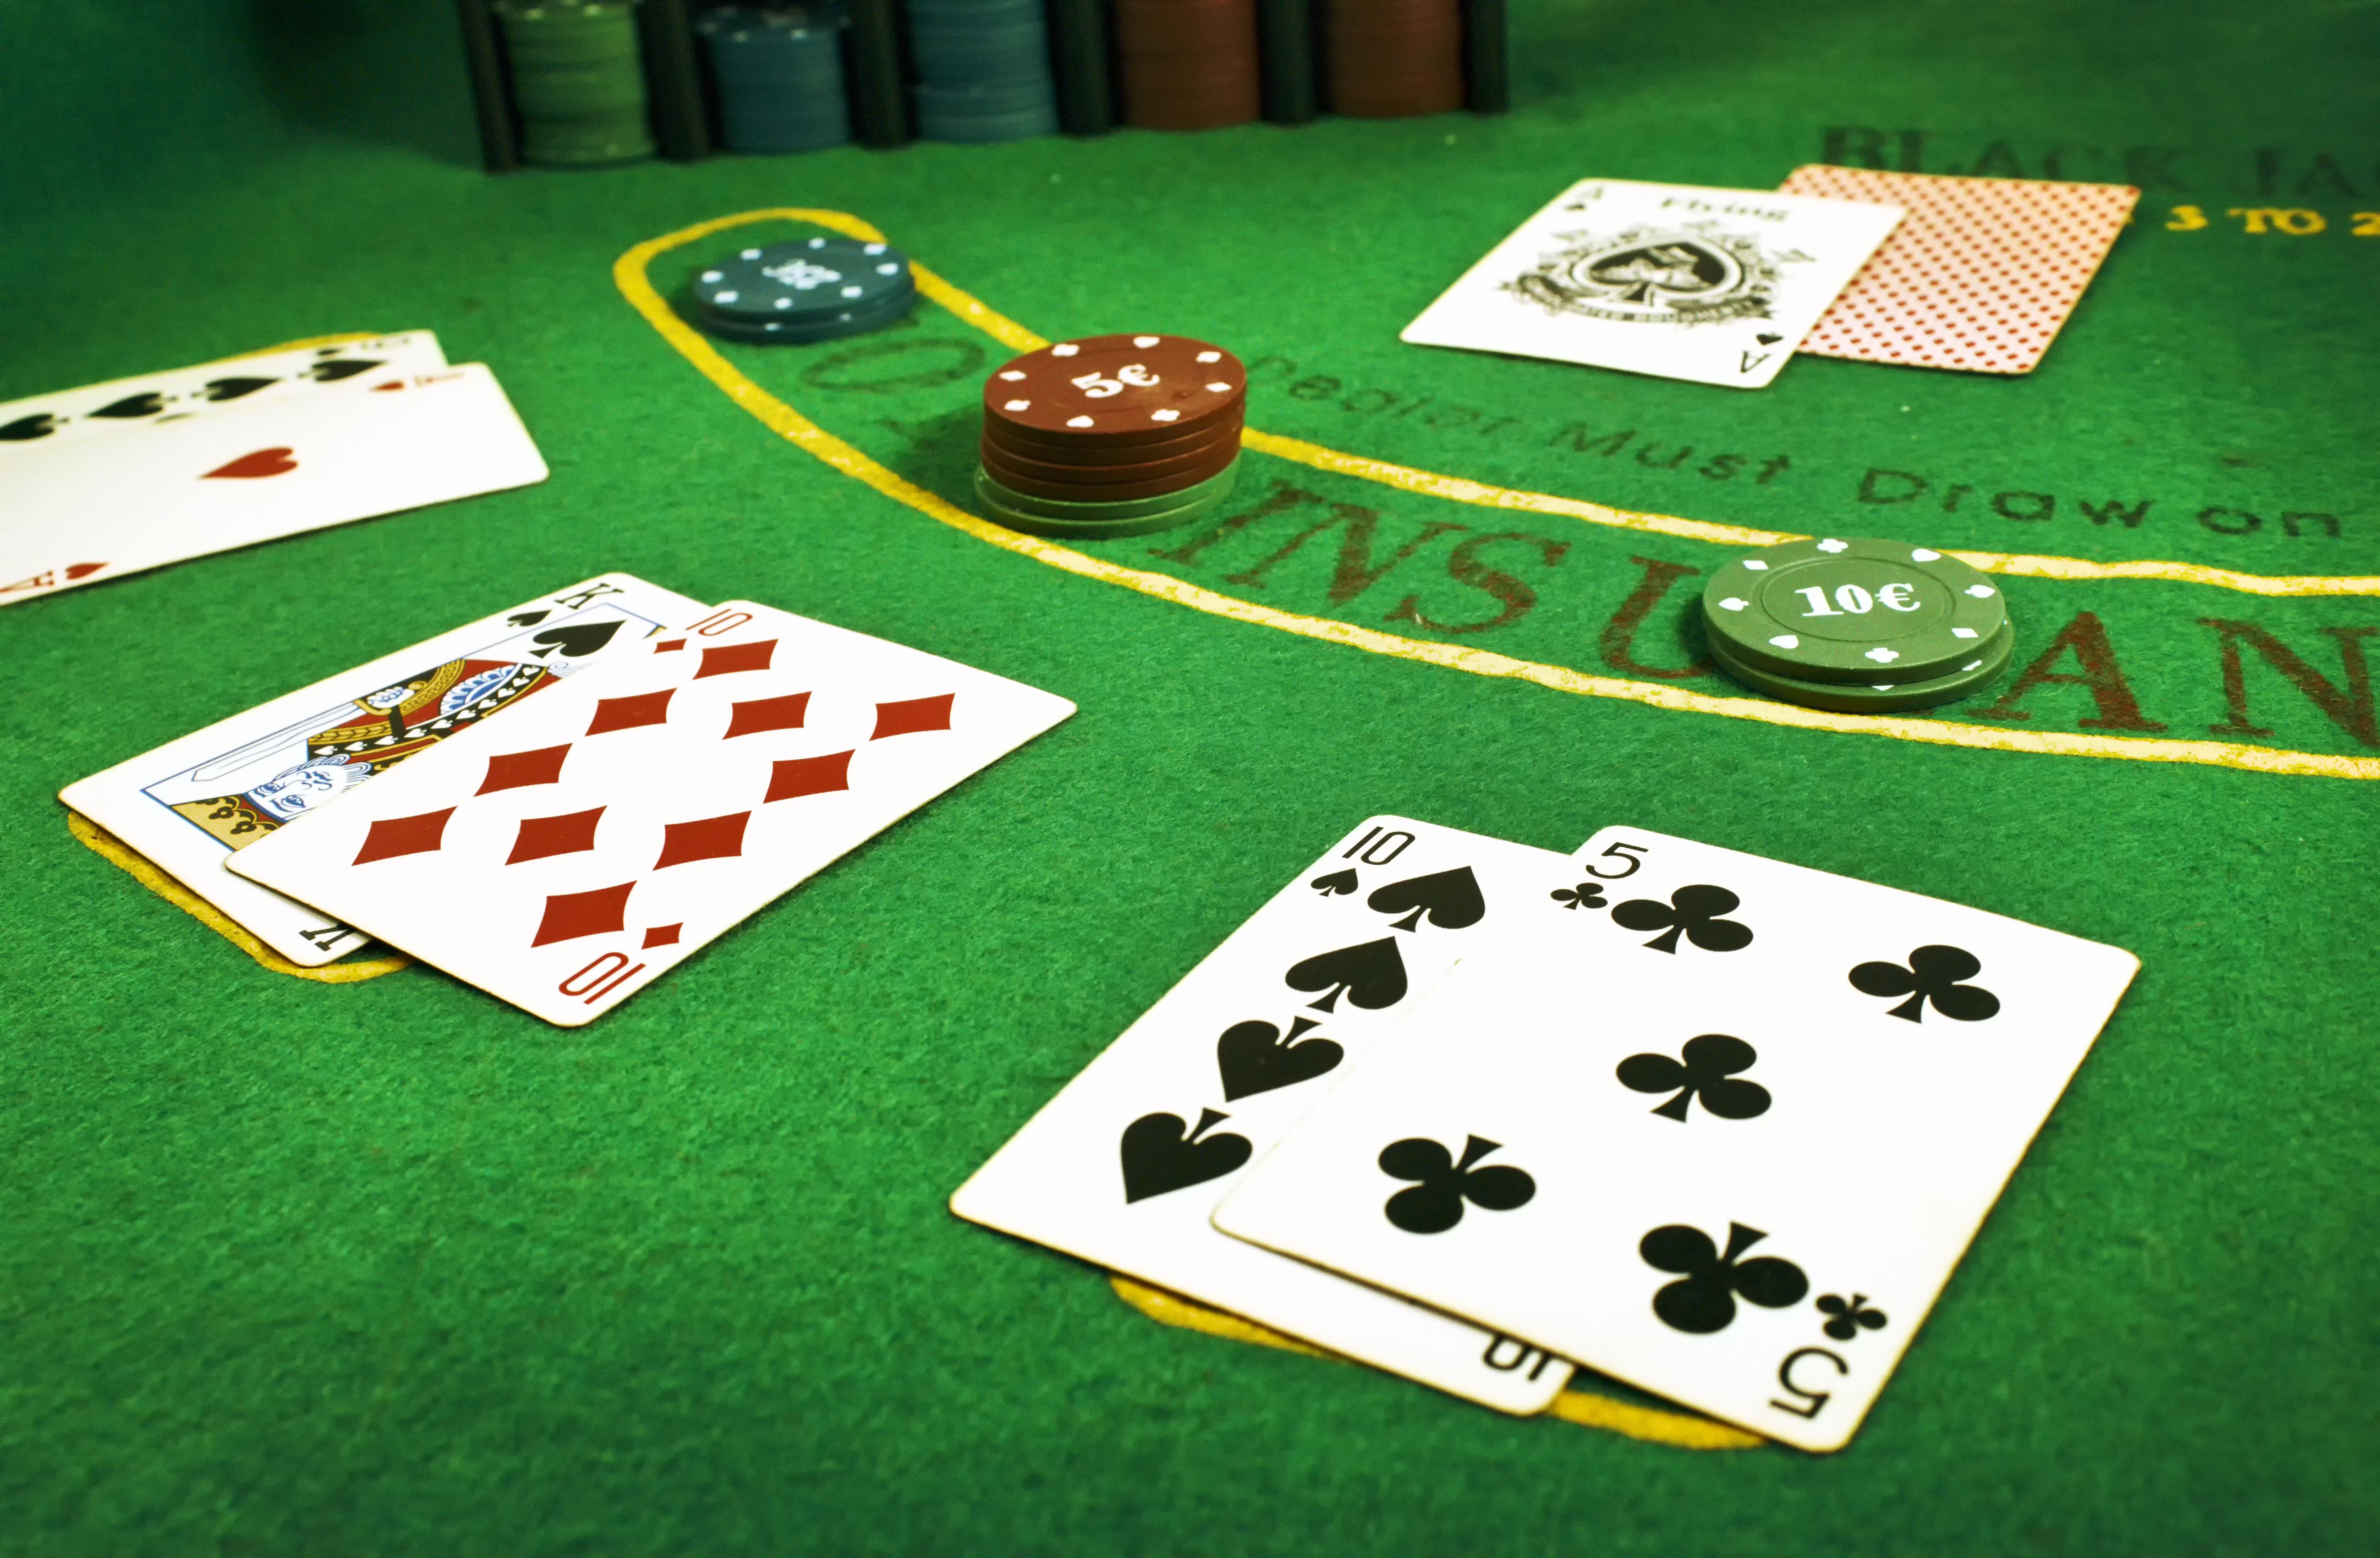 Blackjack table